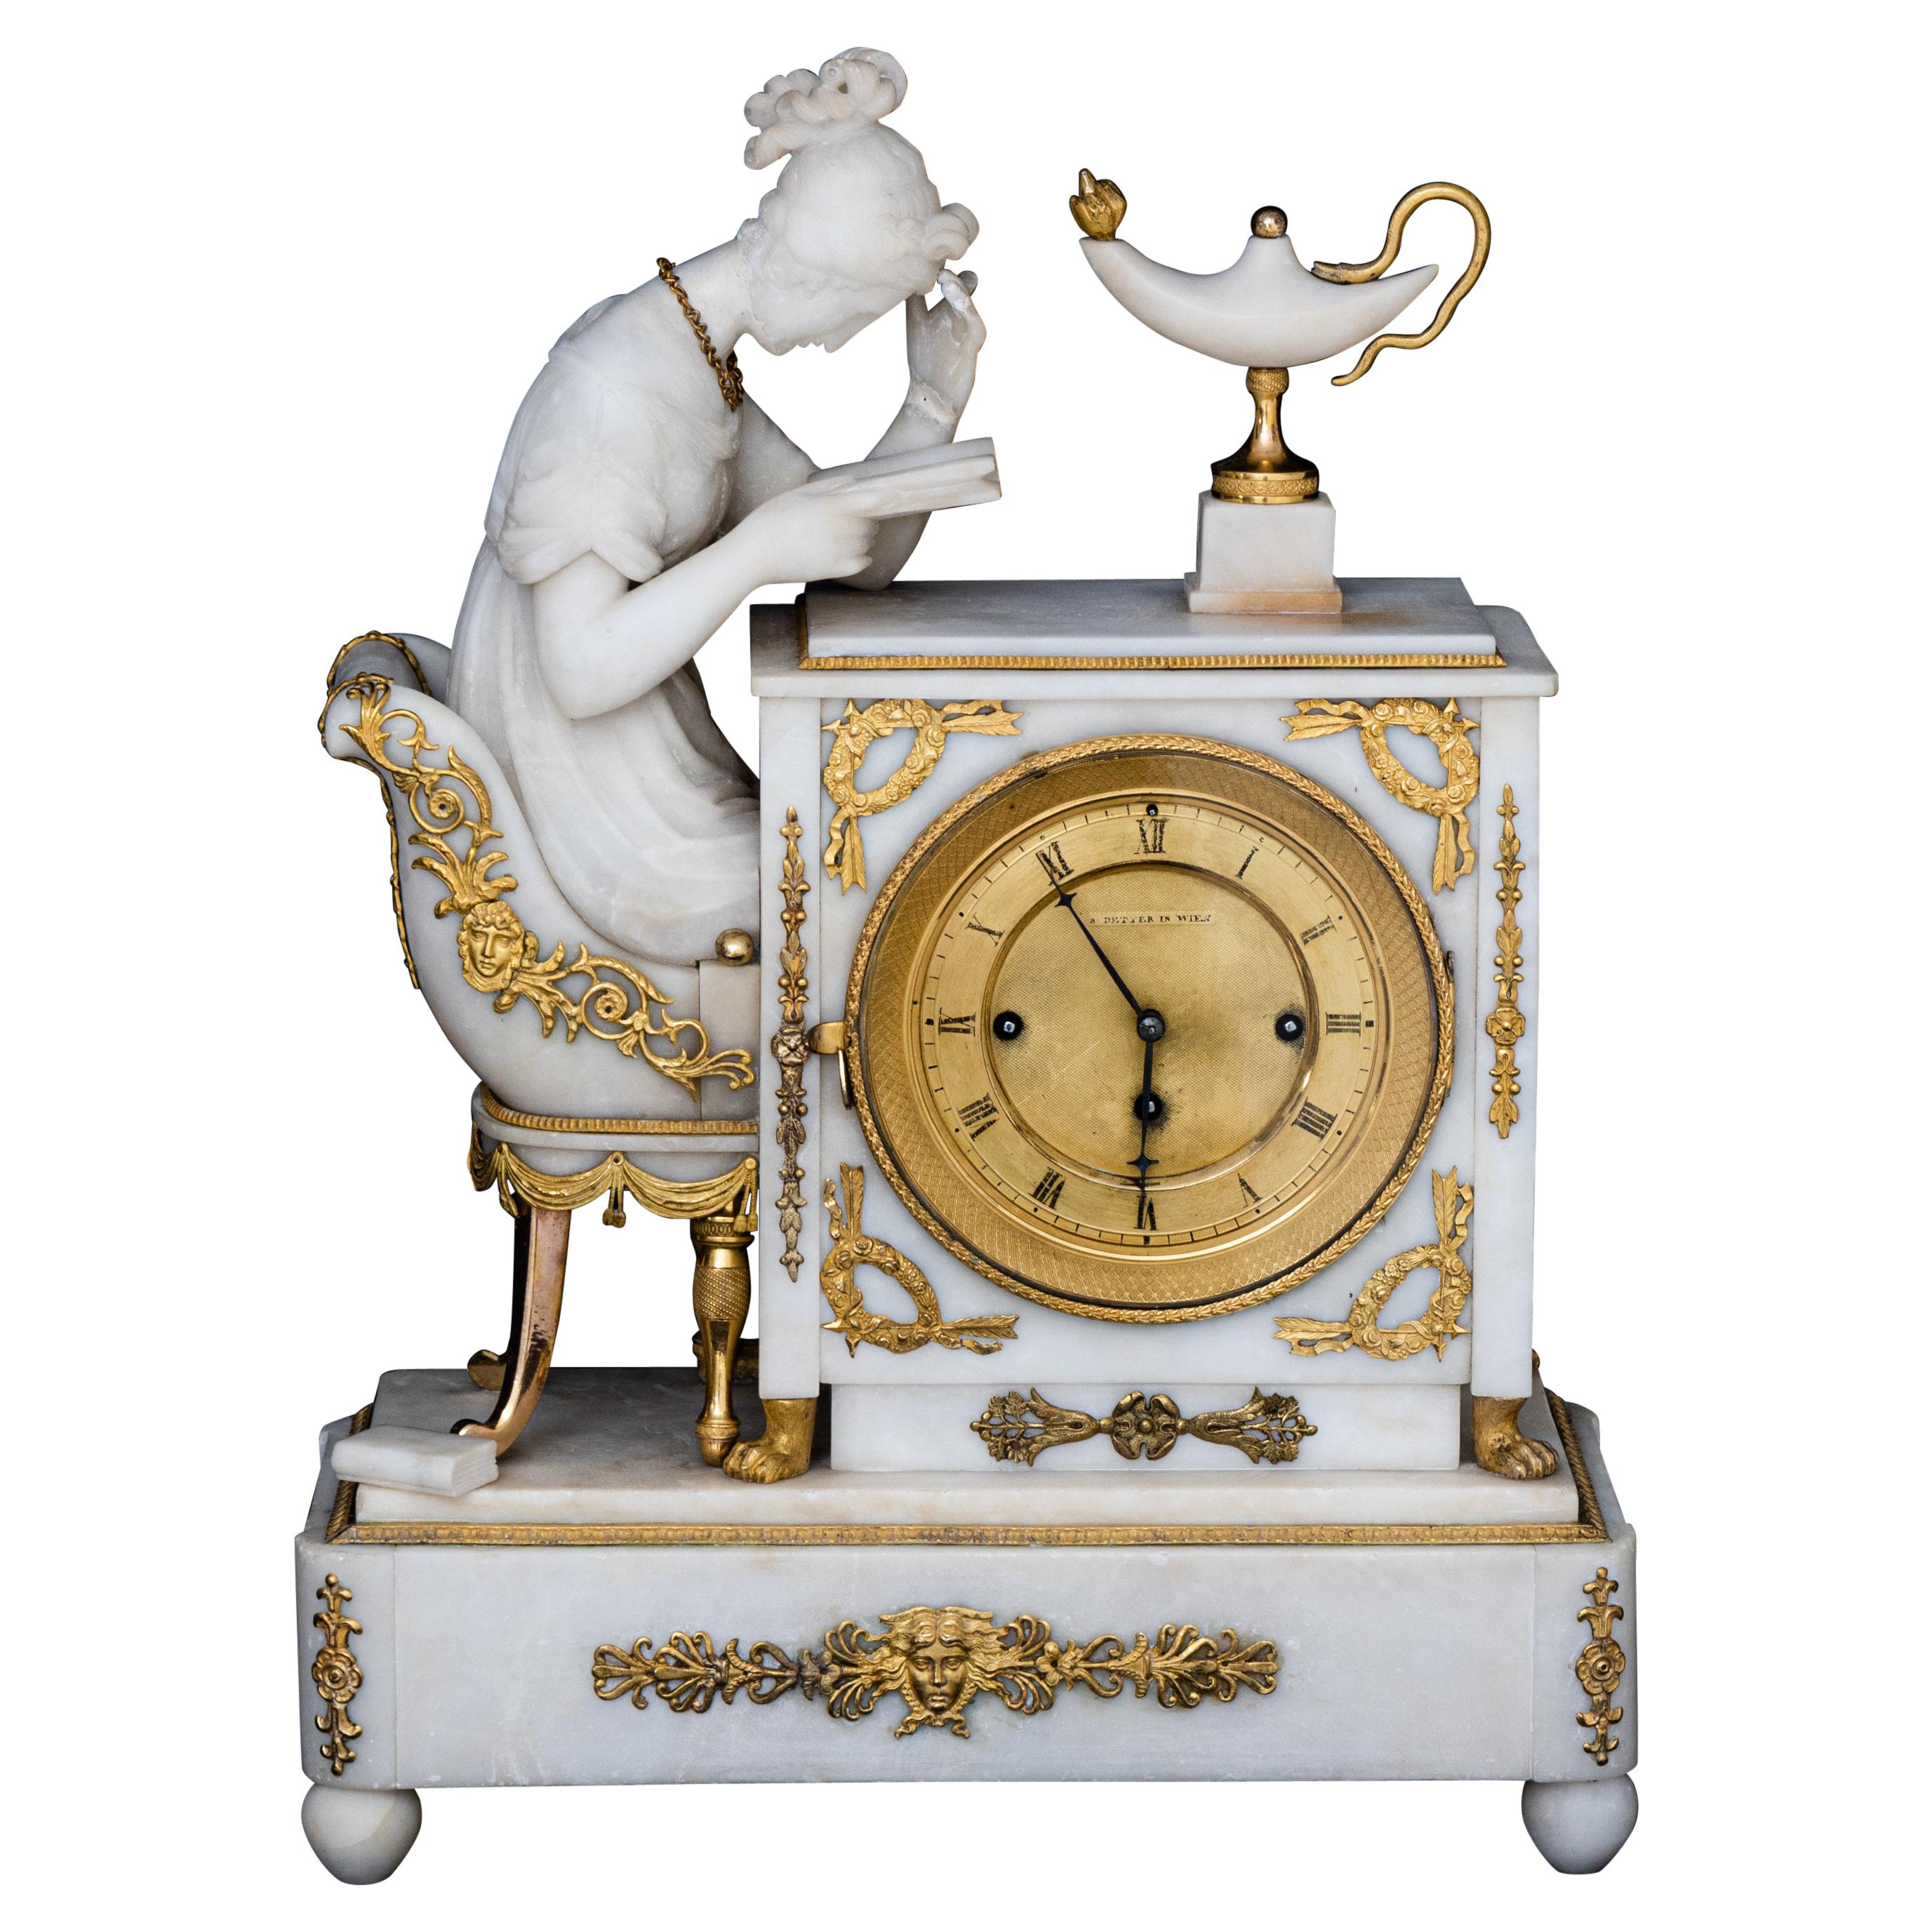 Alabaster Pendulum 'The Reader', Vienna, Dated 1832